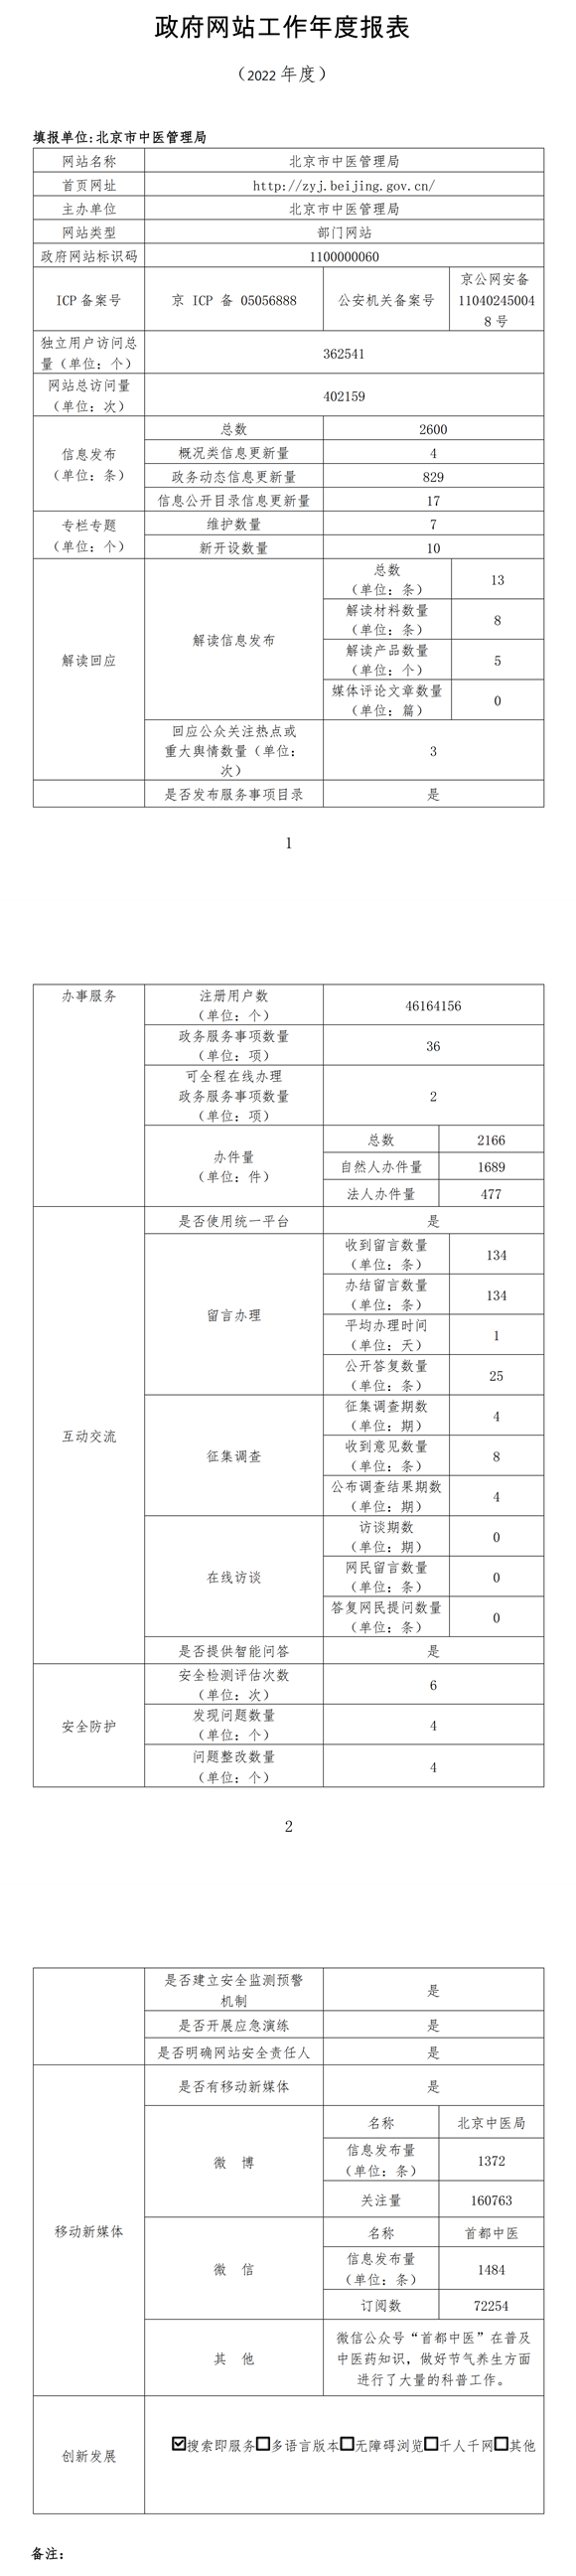 北京市中醫管理局2022年政府網站年度工作報表